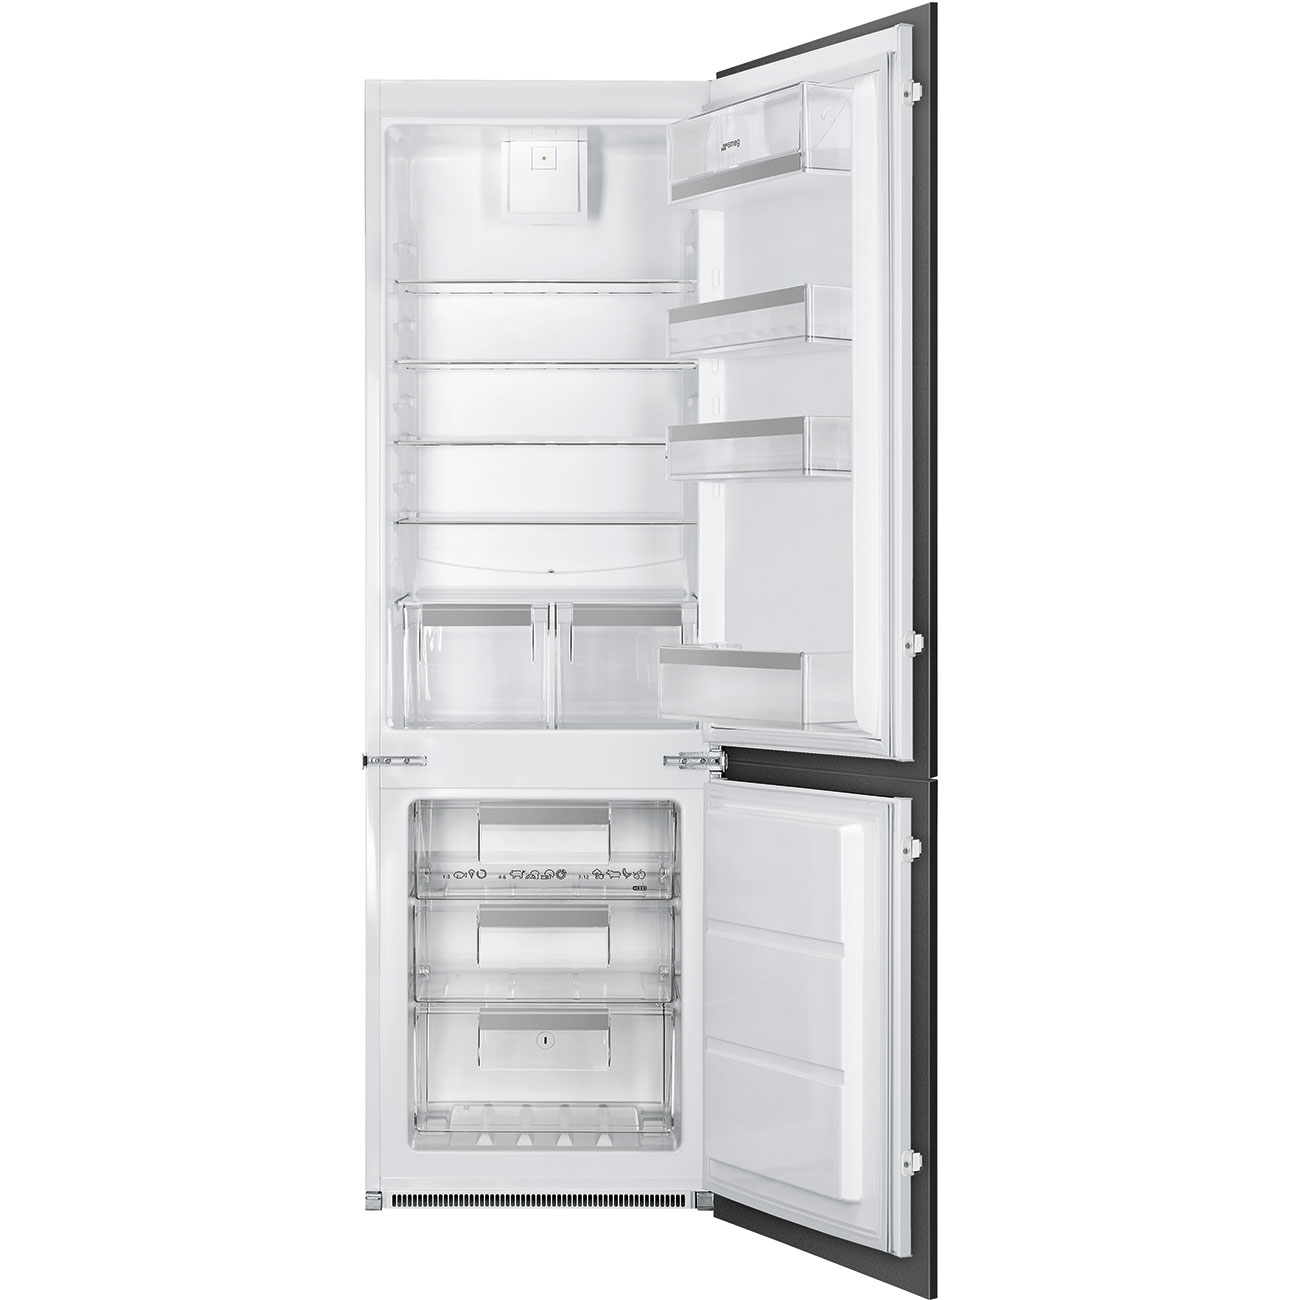 Встраиваемый холодильник Smeg C8173N1F белый встраиваемый двухкамерный холодильник smeg c8173n1f